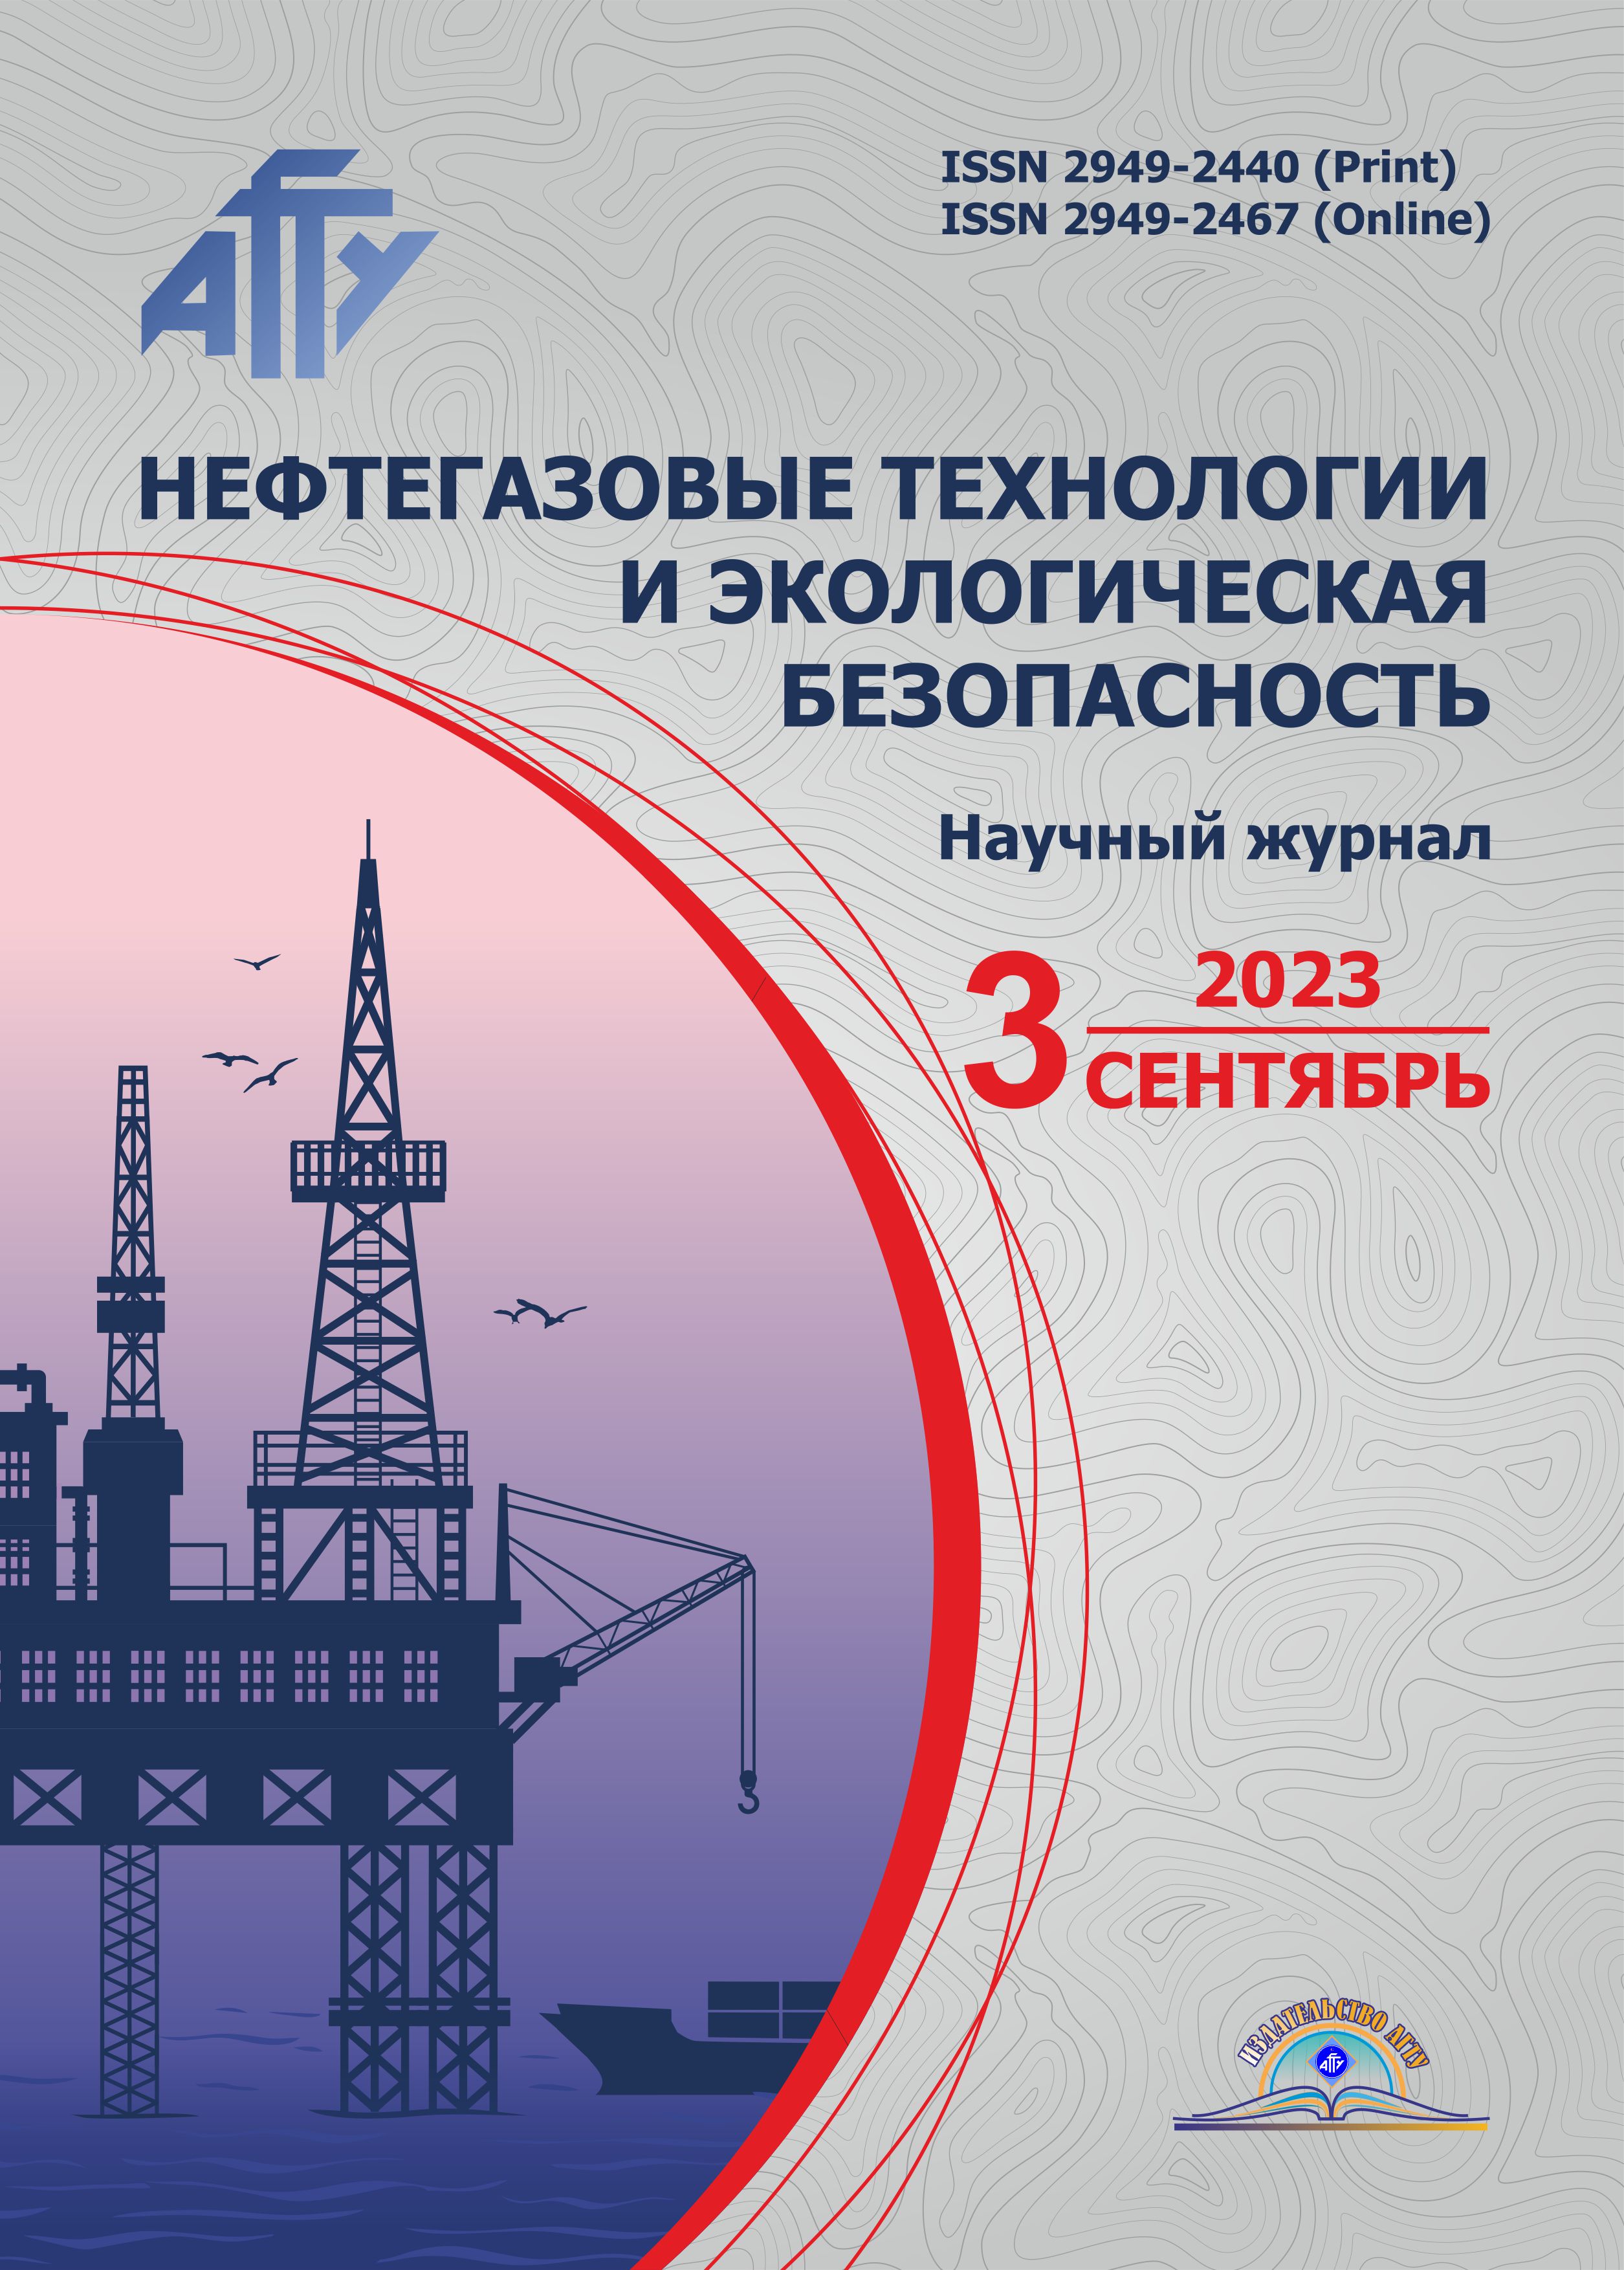             Нефтегазовые технологии и экологическая безопасность
    